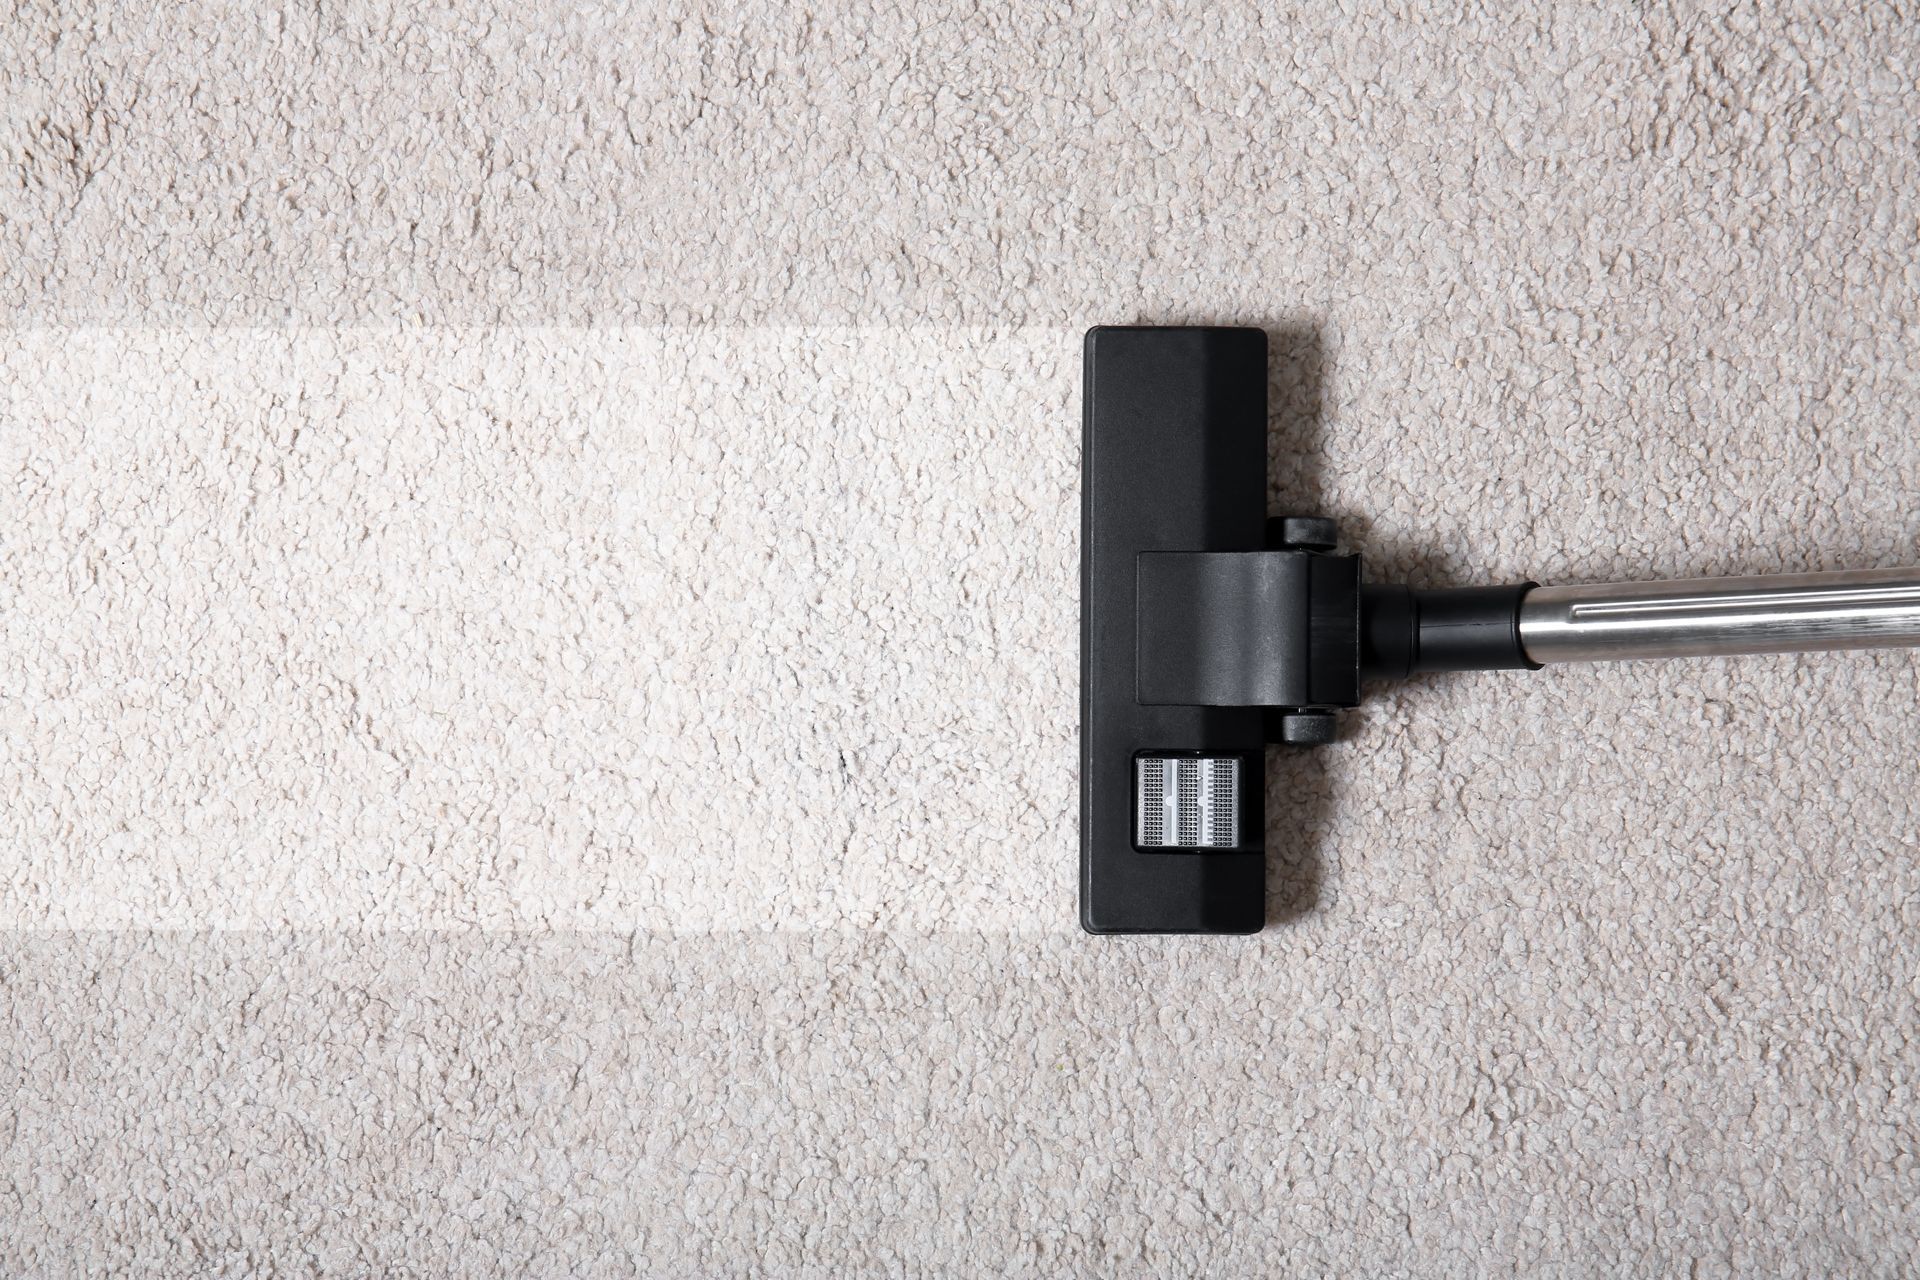 Vacuum cleaner on carpet indoors